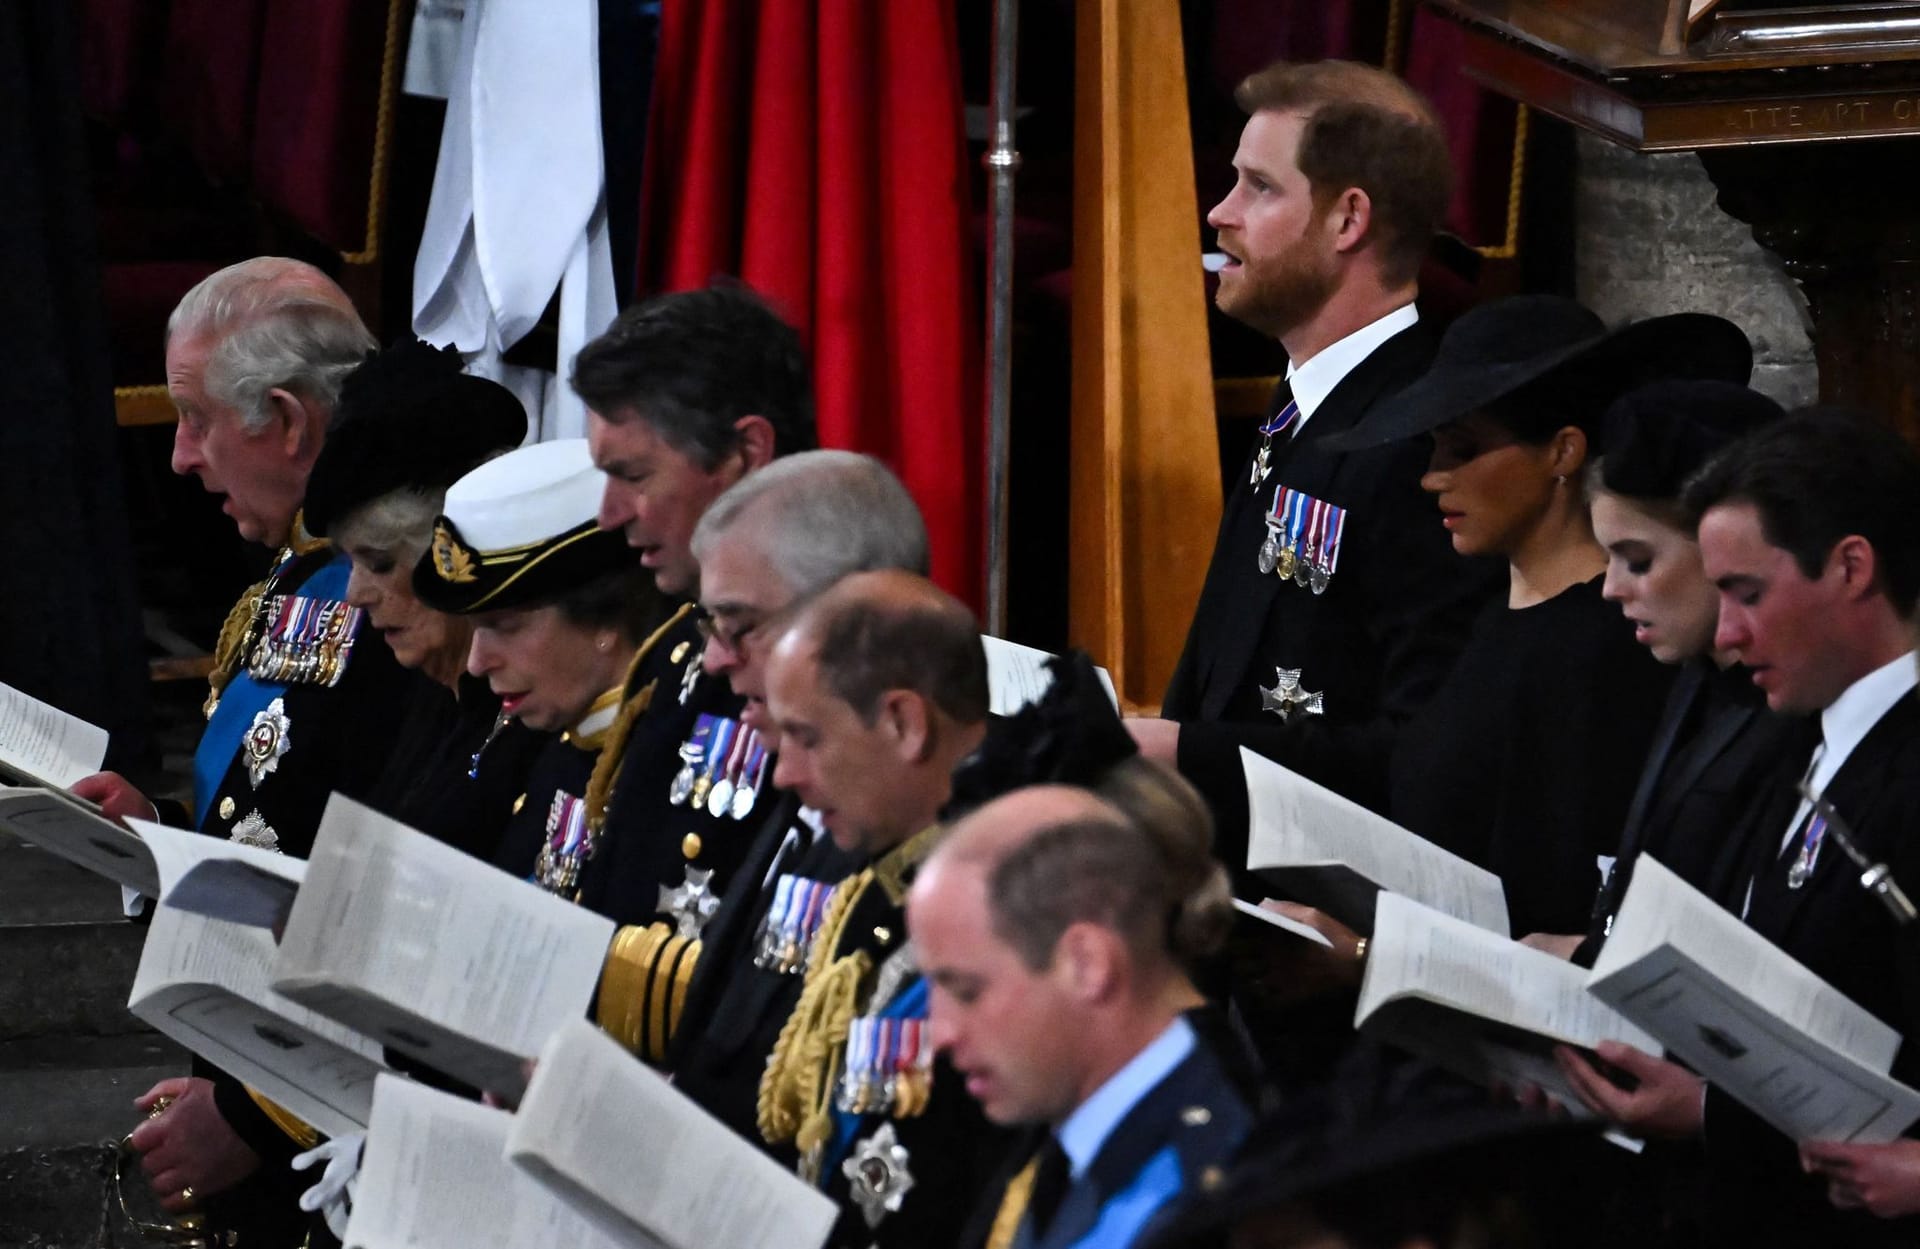 Während der Trauerfeier singt die royale Familie für die Queen, darunter Prinz Wiliam (vorne) und Prinz Harry (hinten rechts).